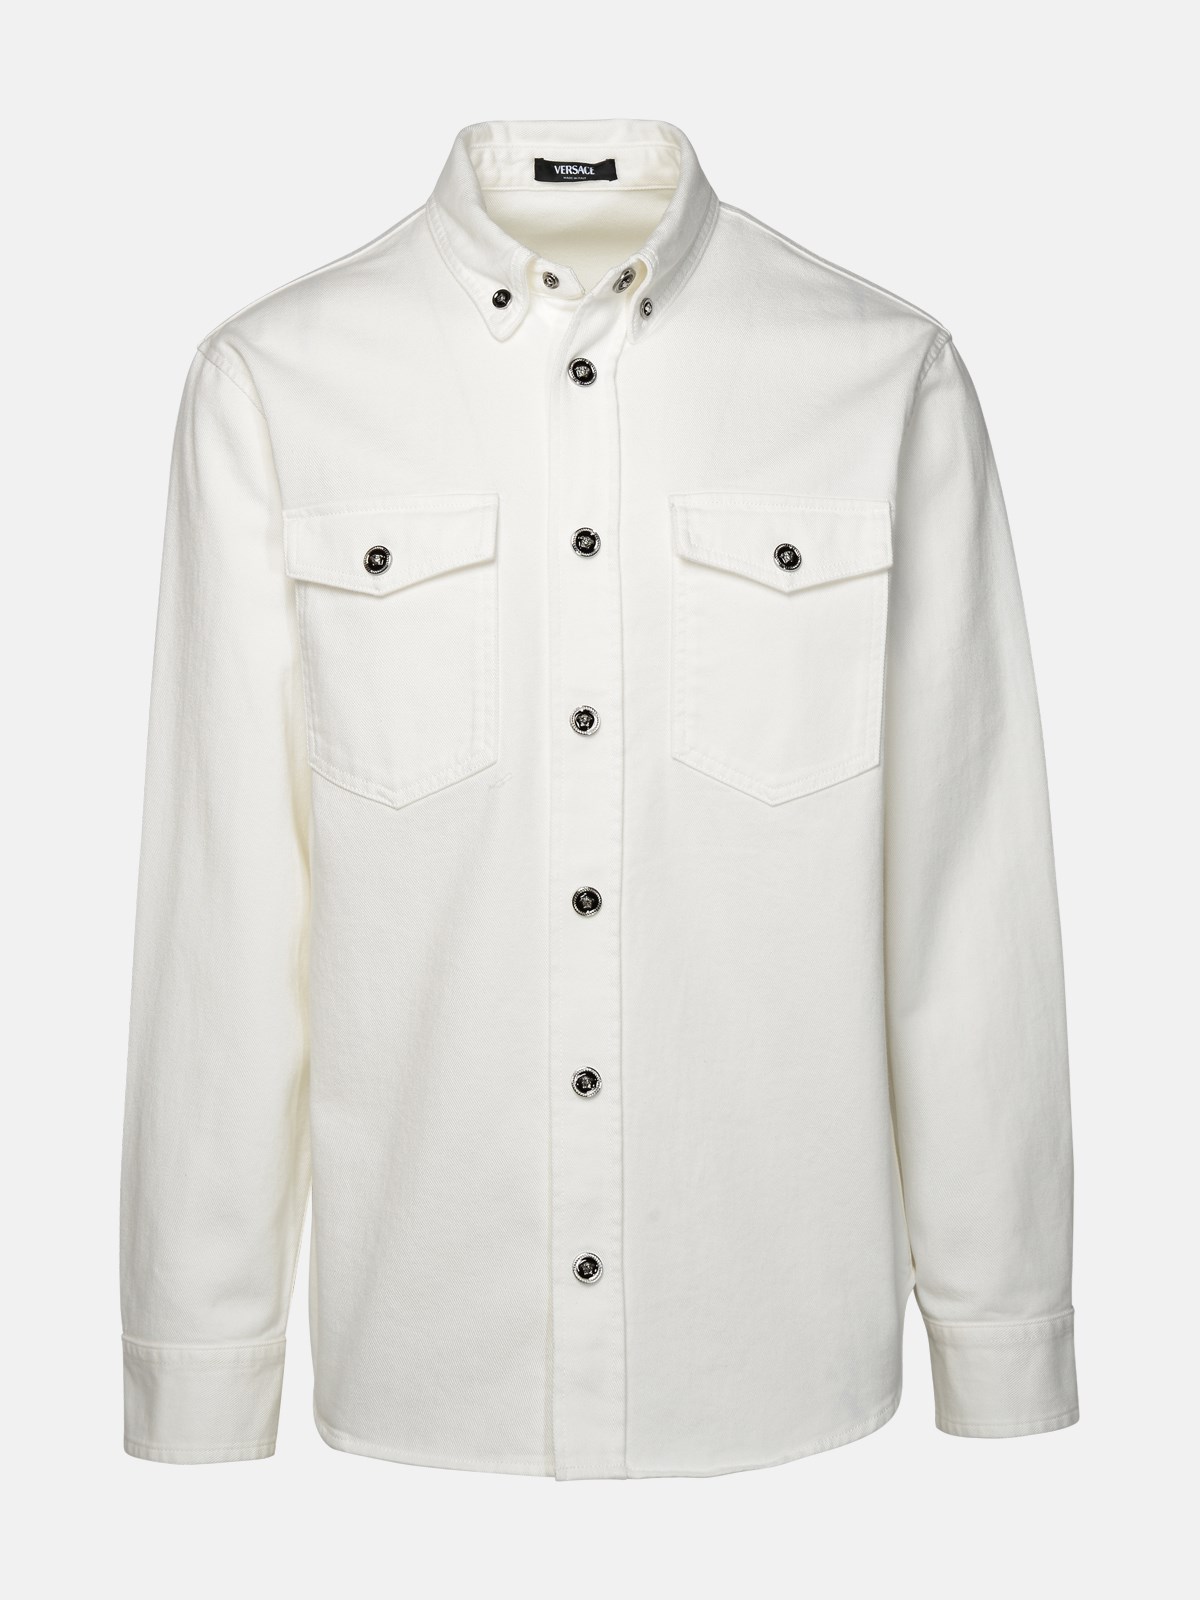 Versace Denim Shirt In White Cotton